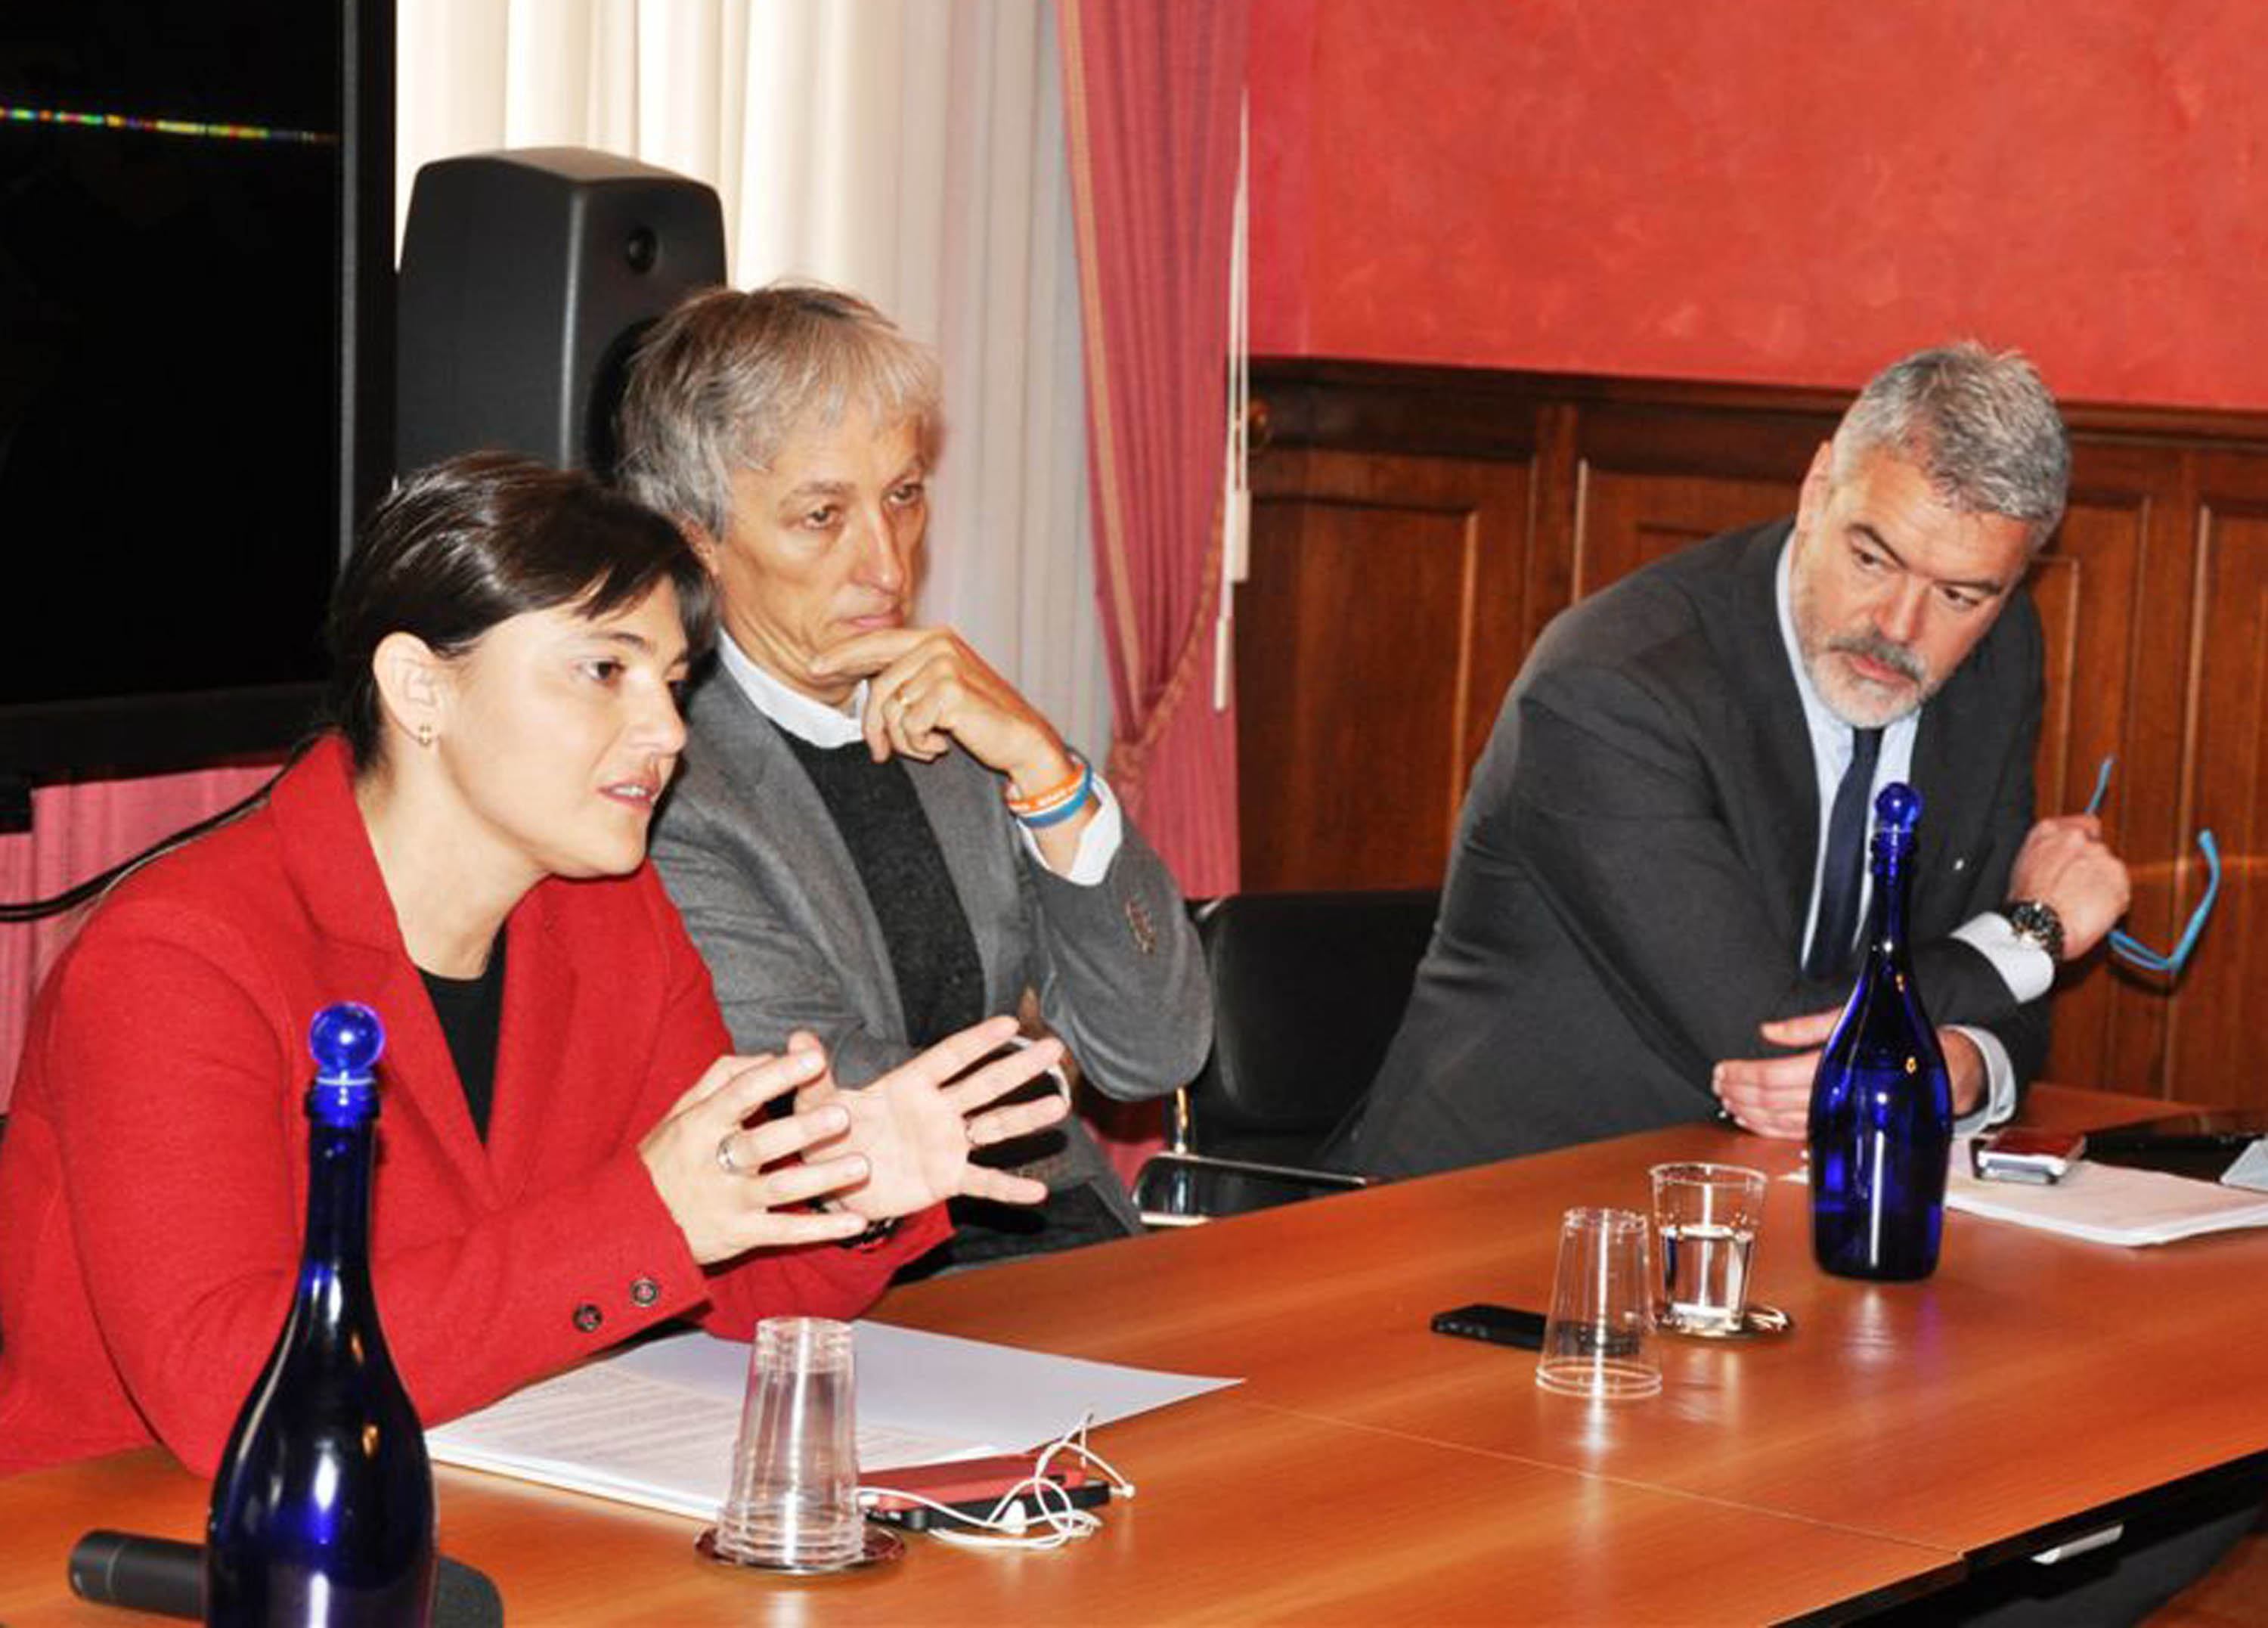 Debora Serracchiani (Presidente Friuli Venezia Giulia), Riccardo Luna (Presidente Associazione Wikitalia) e Paolo Panontin (Assessore regionale Funzione pubblica) in una foto d'archivio